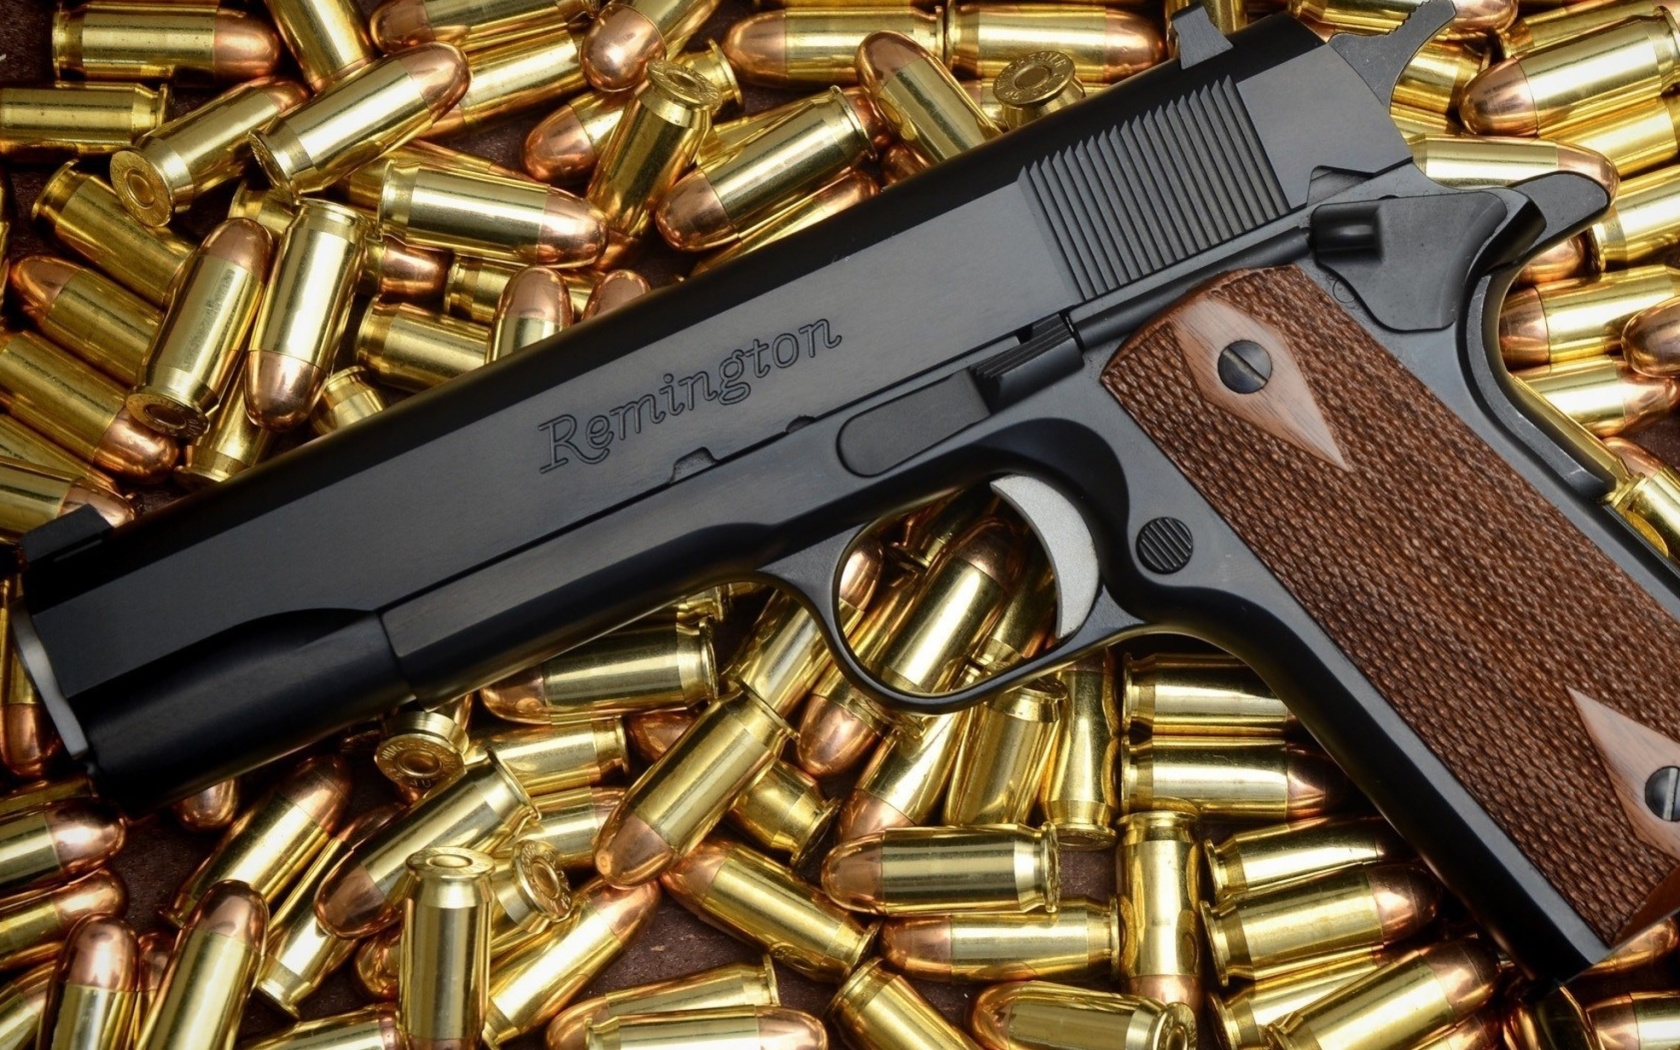 Обои Pistol Remington 1680x1050